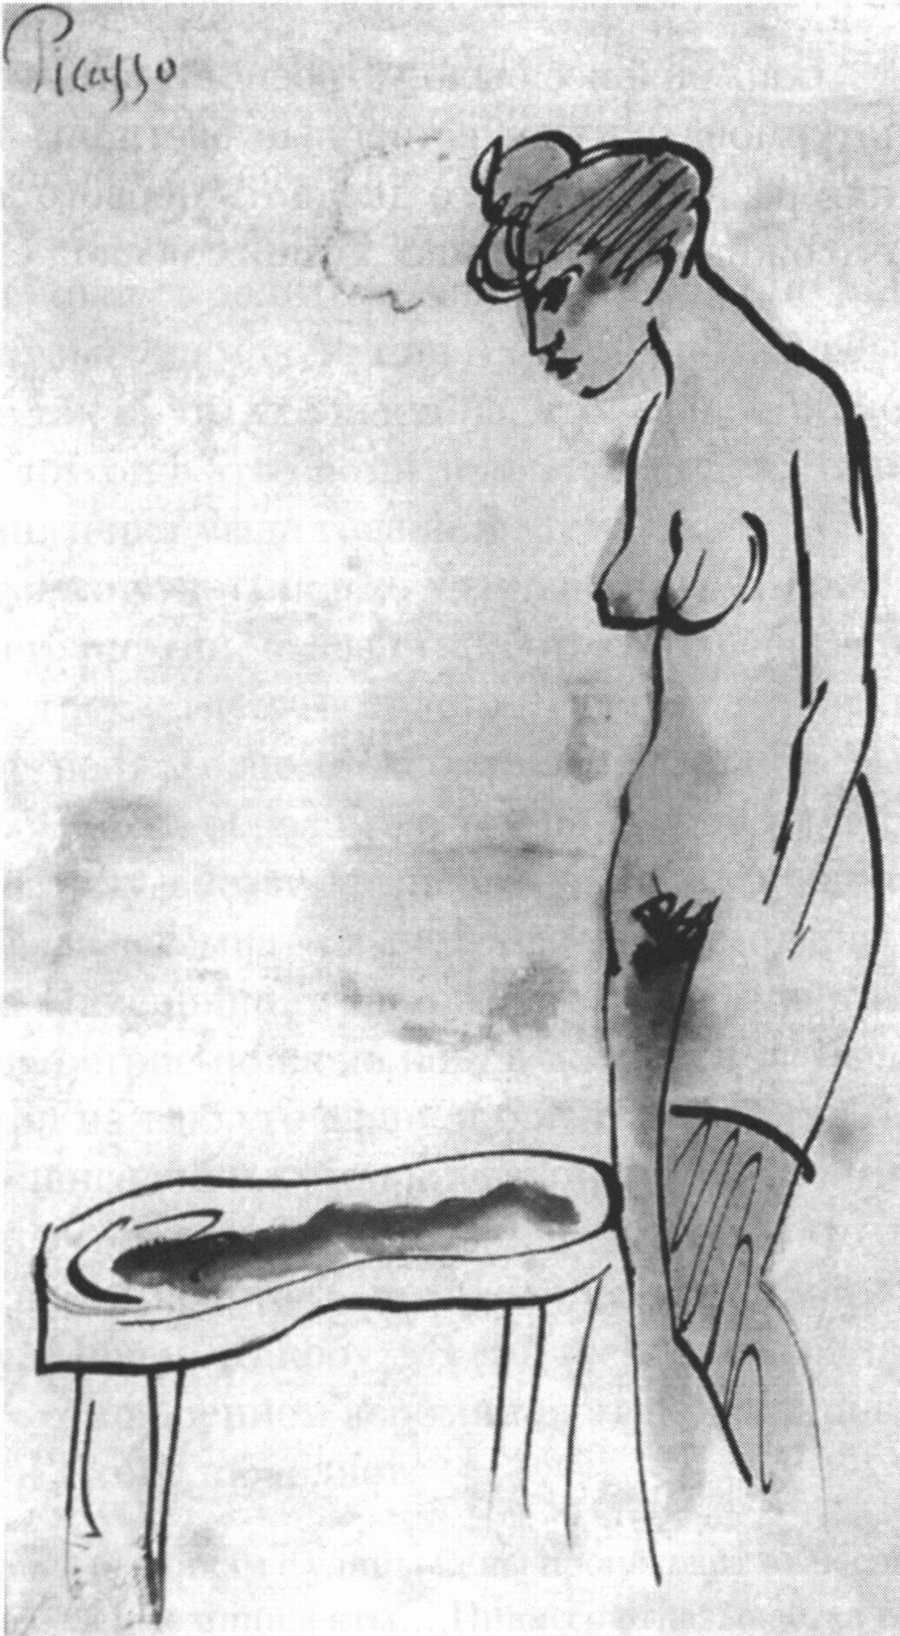 Женская фигура. Барселона, 1903. Бумага, перо, акварель, 8x5